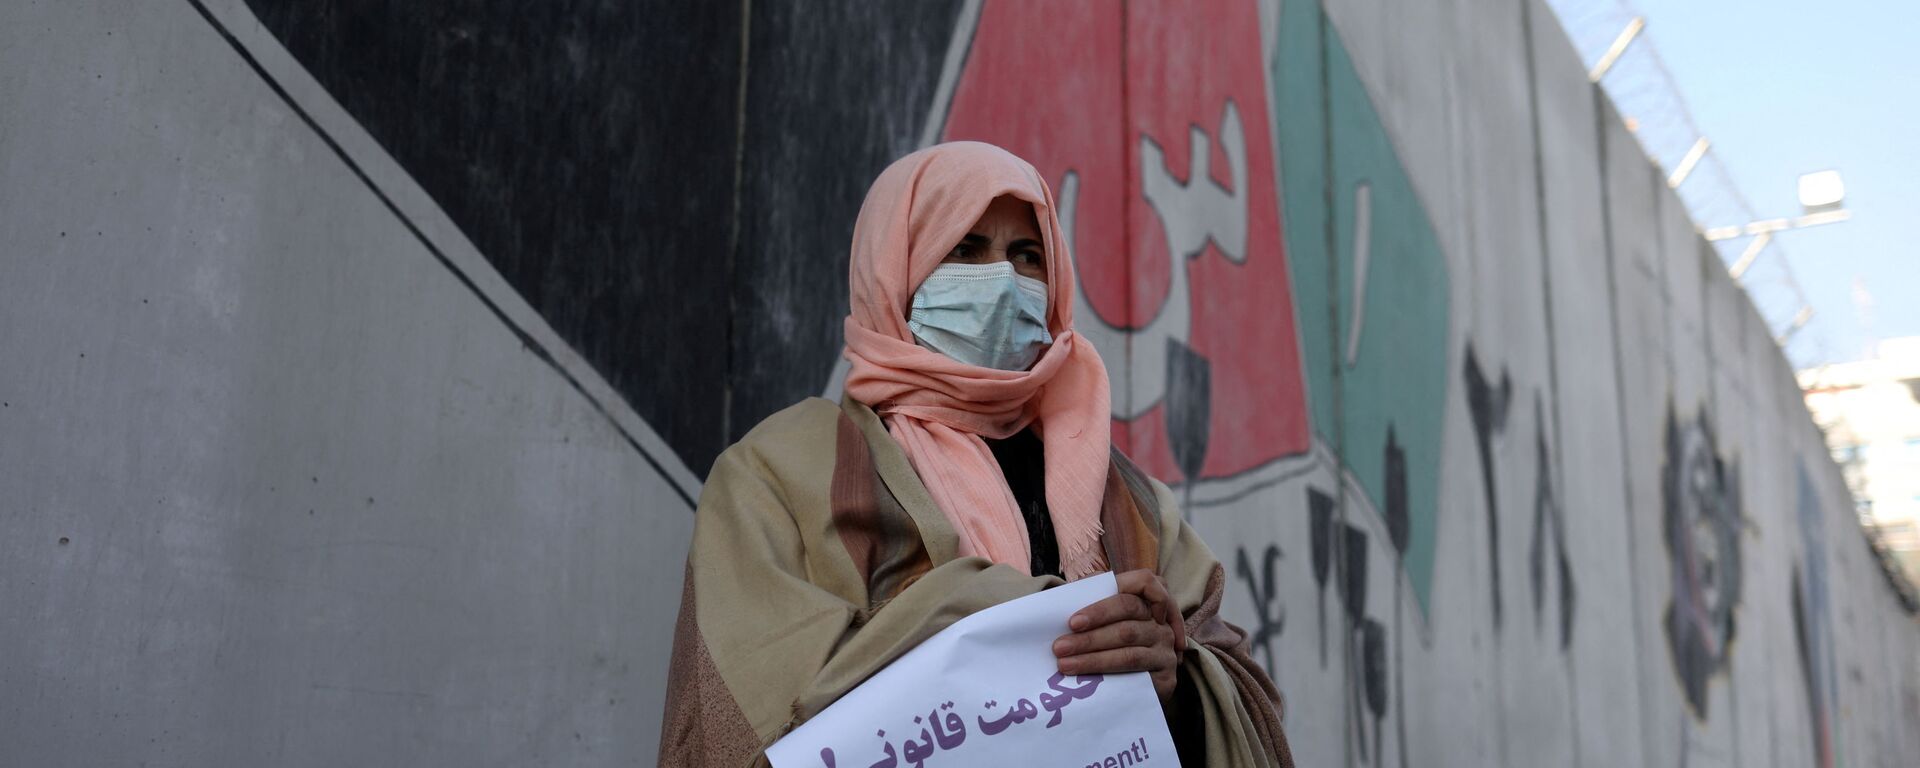 مظاهراتت النساء الأفغانيات في كابول ضد قيود طالبان لحقوقهن، أفغانستان 28 ديسمبر 2021 - سبوتنيك عربي, 1920, 22.02.2022